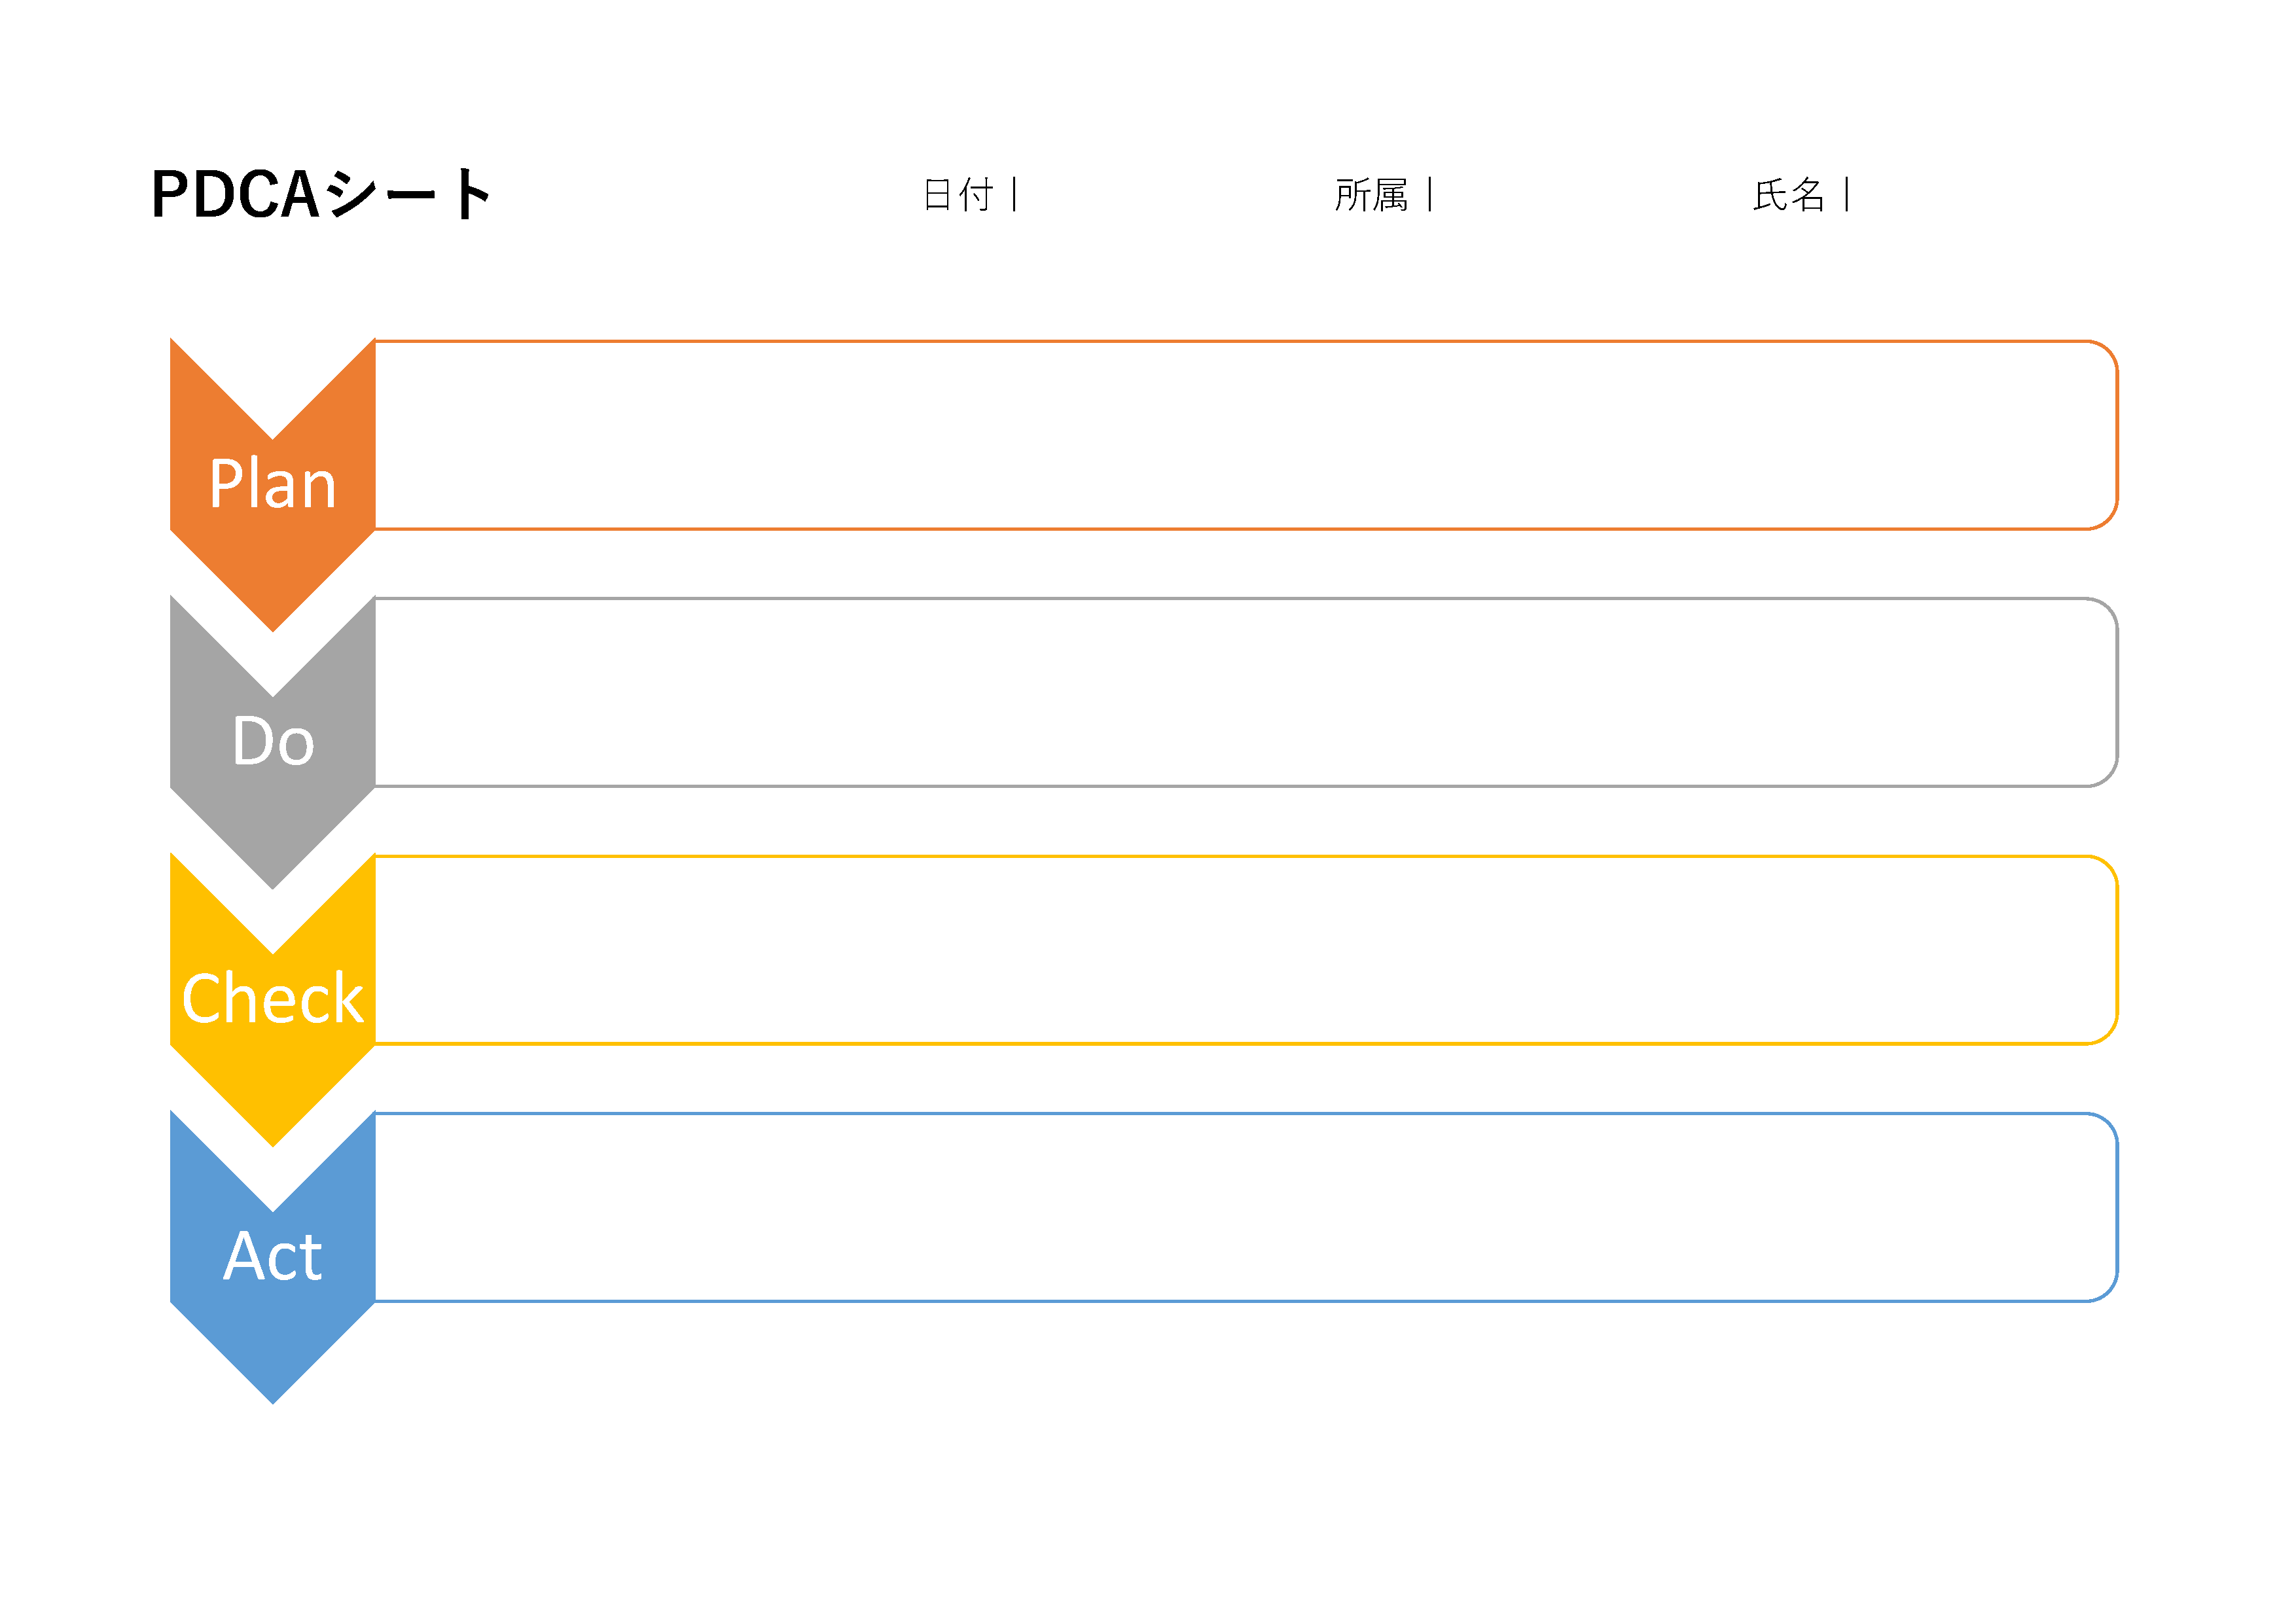 PDCAサイクルの各ステップを縦に示す図。各ステップがV字型に連結されており、'Plan'がオレンジ、'Do'がグレー、'Check'がイエロー、'Act'がブルーで色分けされています。